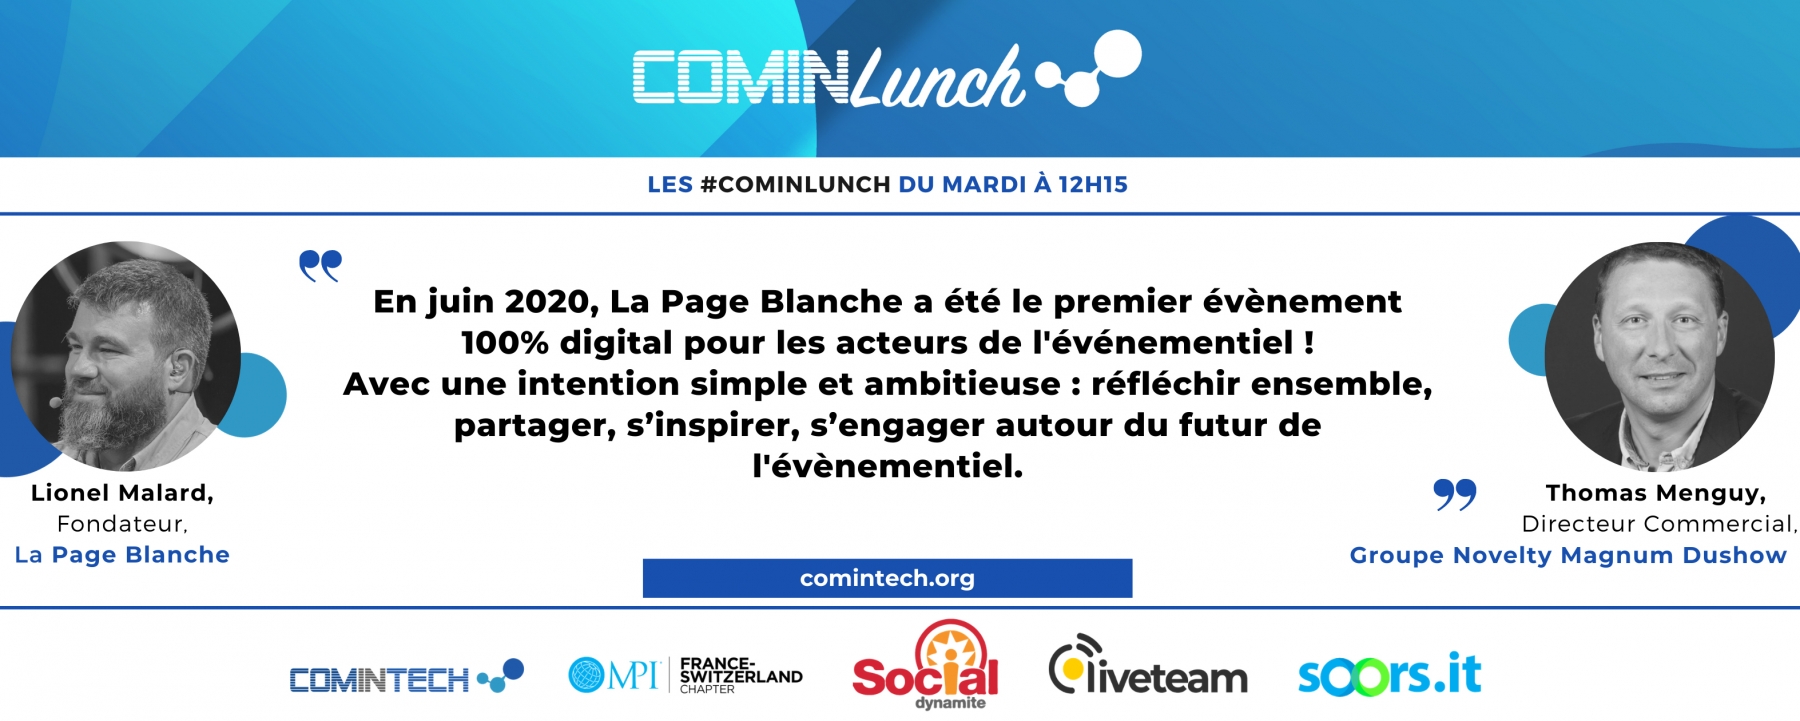 Les lives #ComInTech : live du mardi 2 mars, par MPI France Suisse